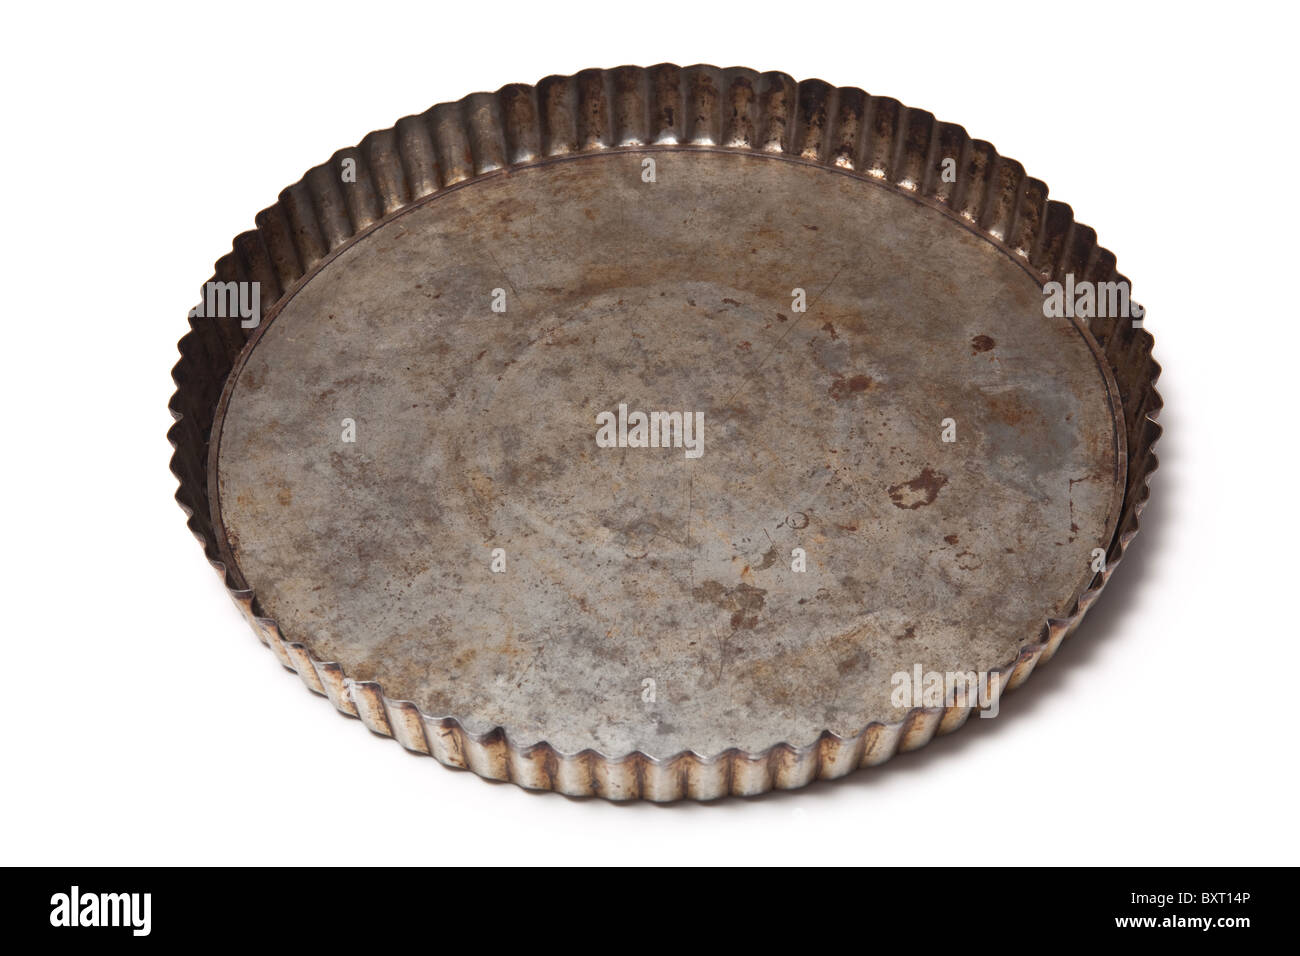 Flan baking tin isolated on a white studio background. Stock Photo